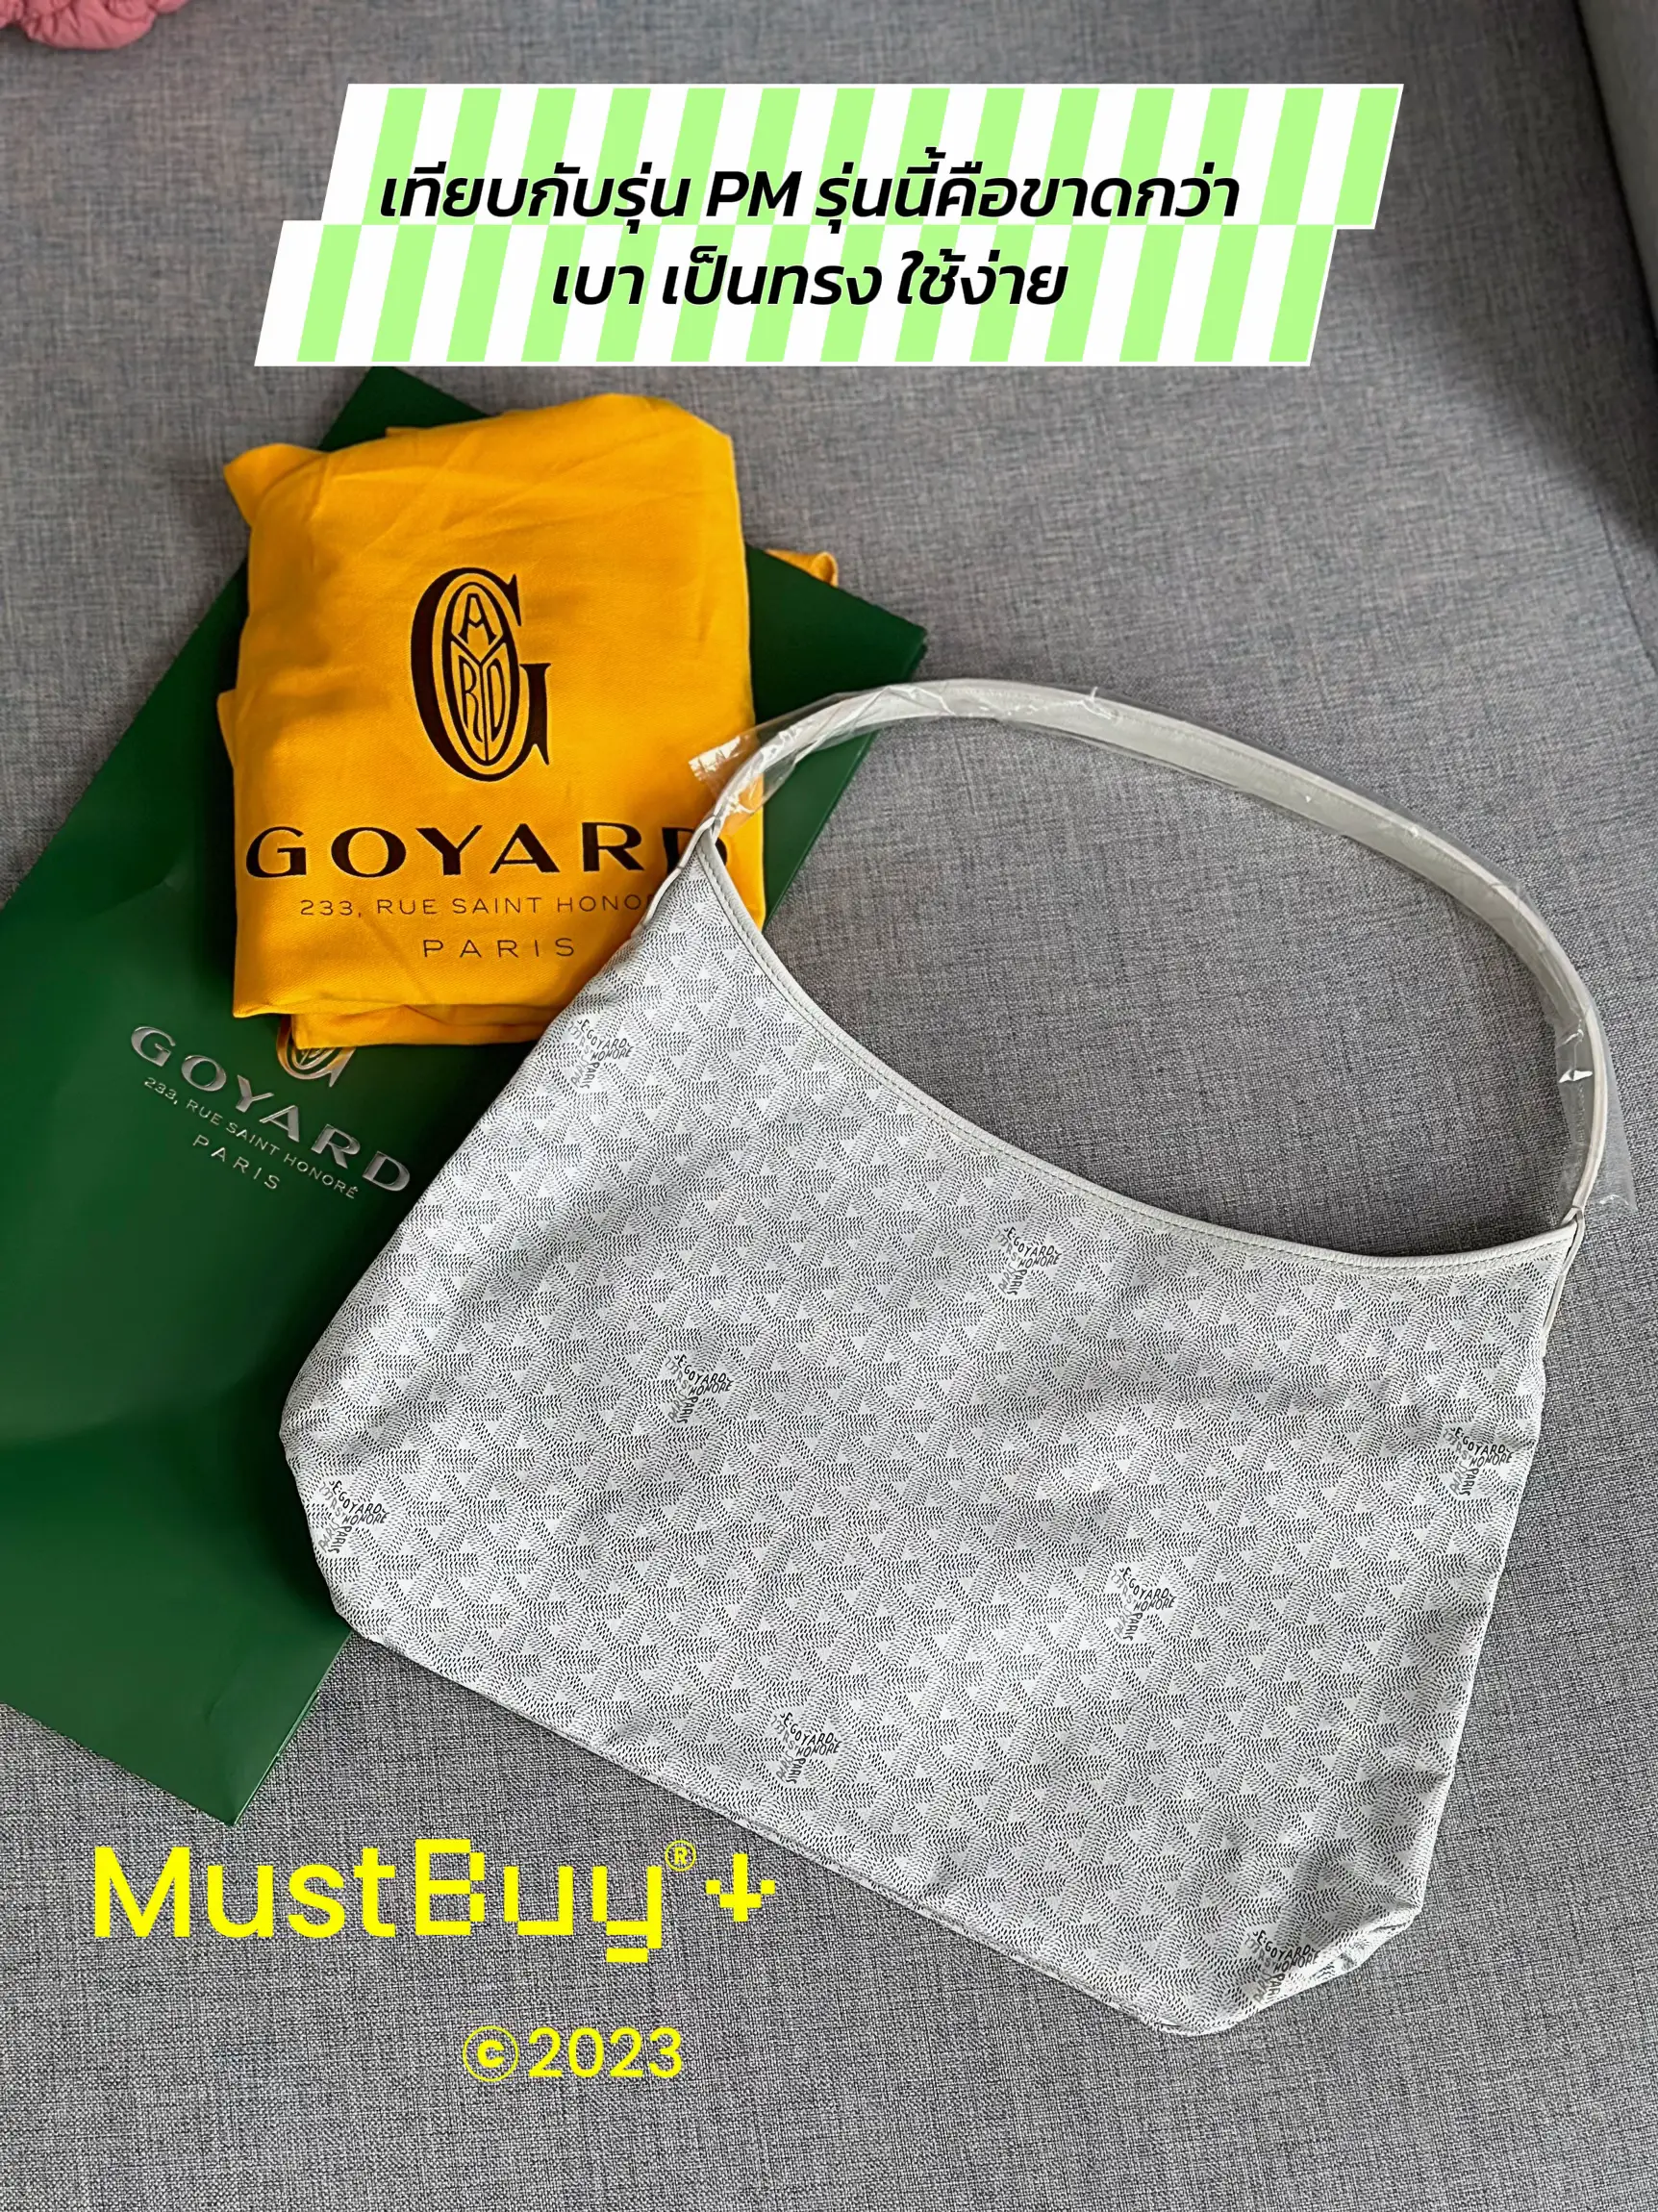 GOYARD Cap-Vert PM Bag (GREEN) [UNBOXING] 